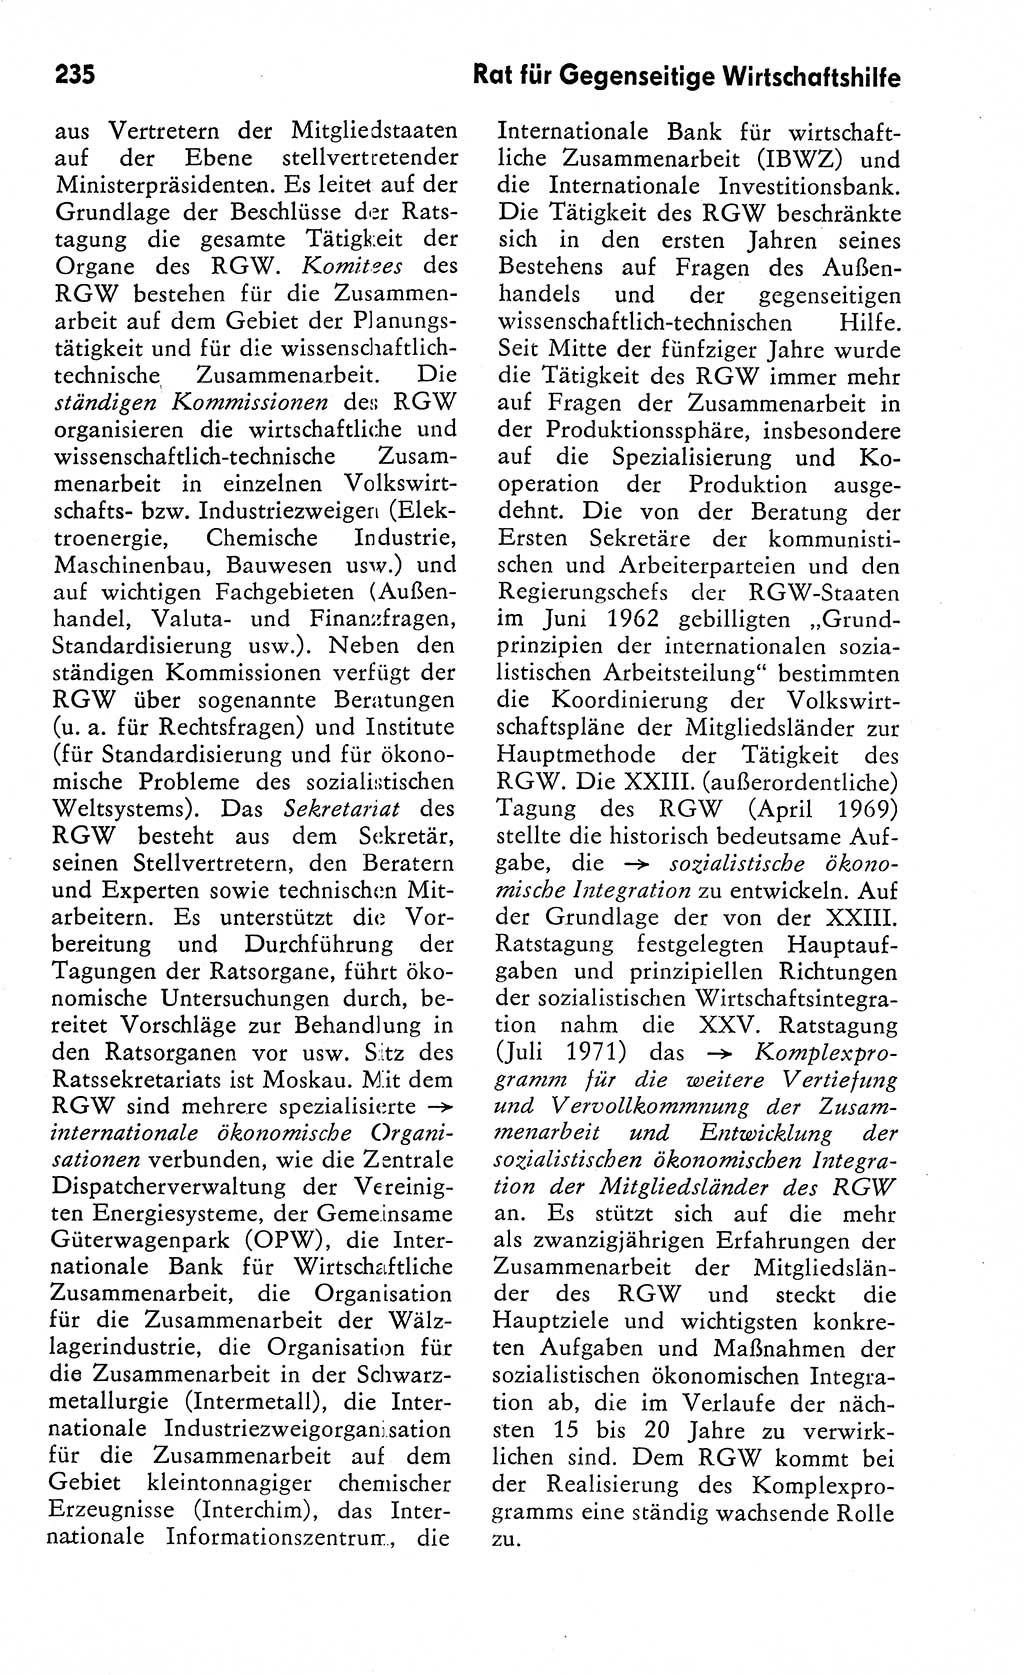 Wörterbuch zum sozialistischen Staat [Deutsche Demokratische Republik (DDR)] 1974, Seite 235 (Wb. soz. St. DDR 1974, S. 235)